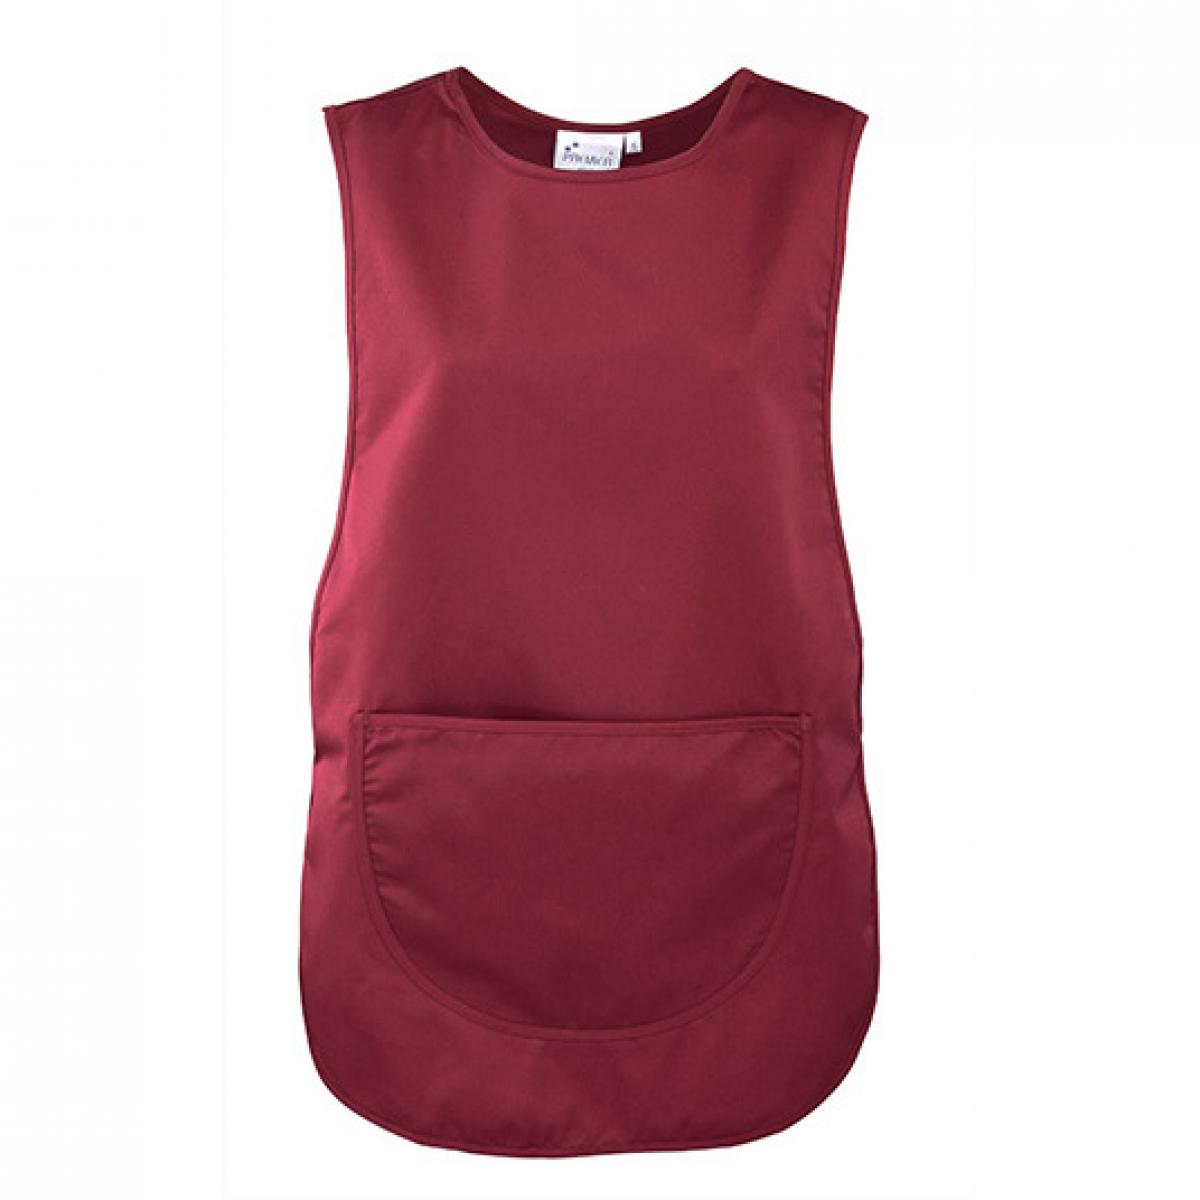 Hersteller: Premier Workwear Herstellernummer: PR171 Artikelbezeichnung: Women`s Pocket Tabard - Waschbar bis 60 °C Farbe: Burgundy (ca. Pantone 216)